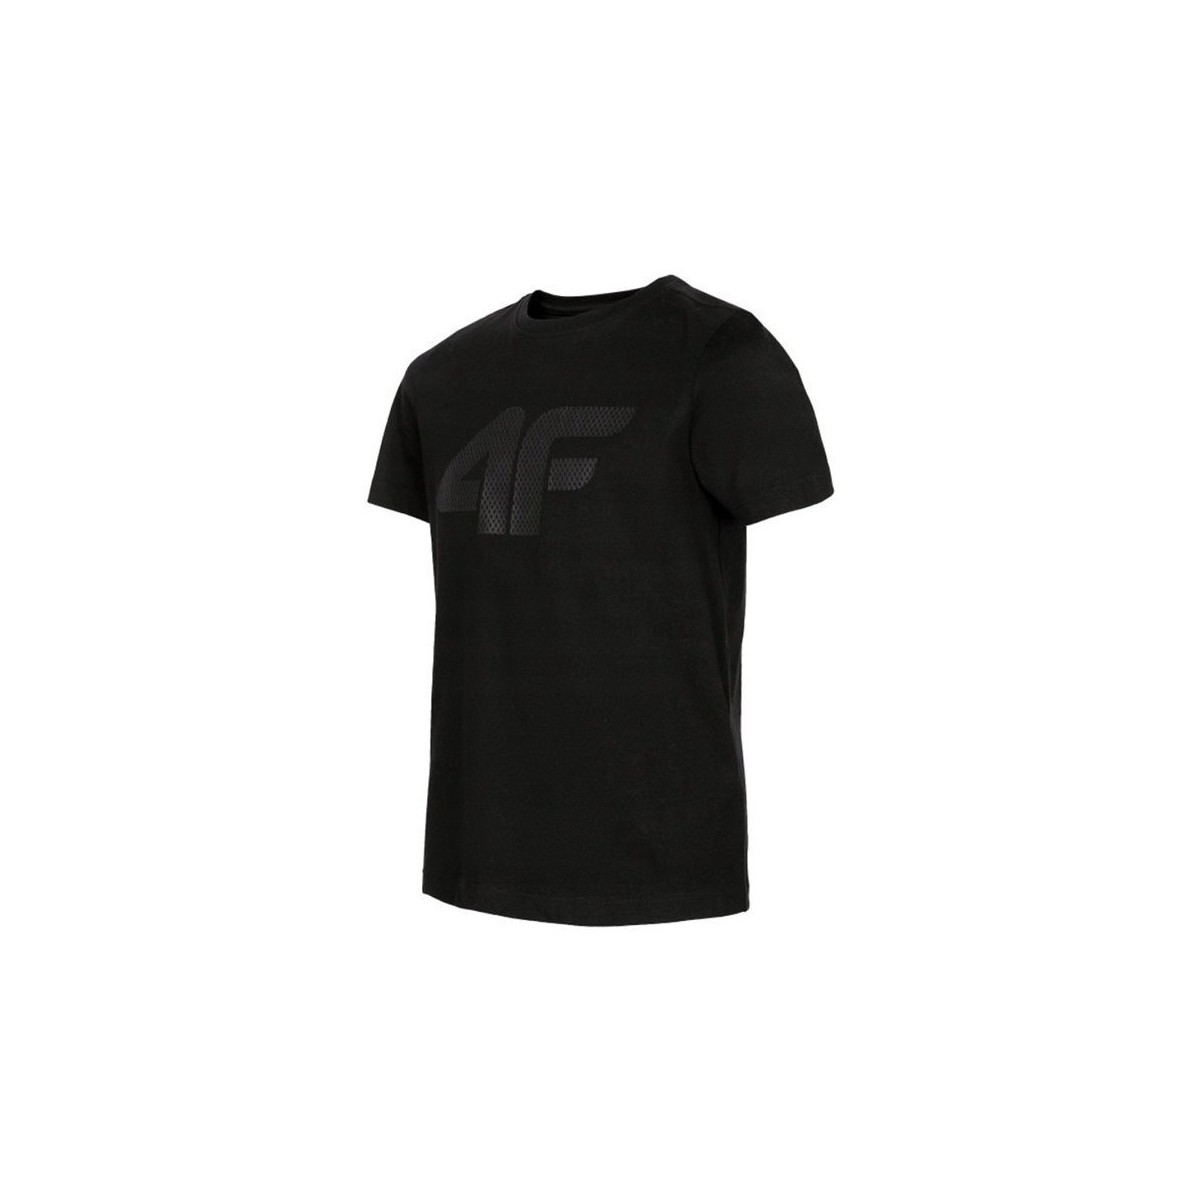 Vêtements Garçon T-shirts manches courtes 4F JTSM002 Noir